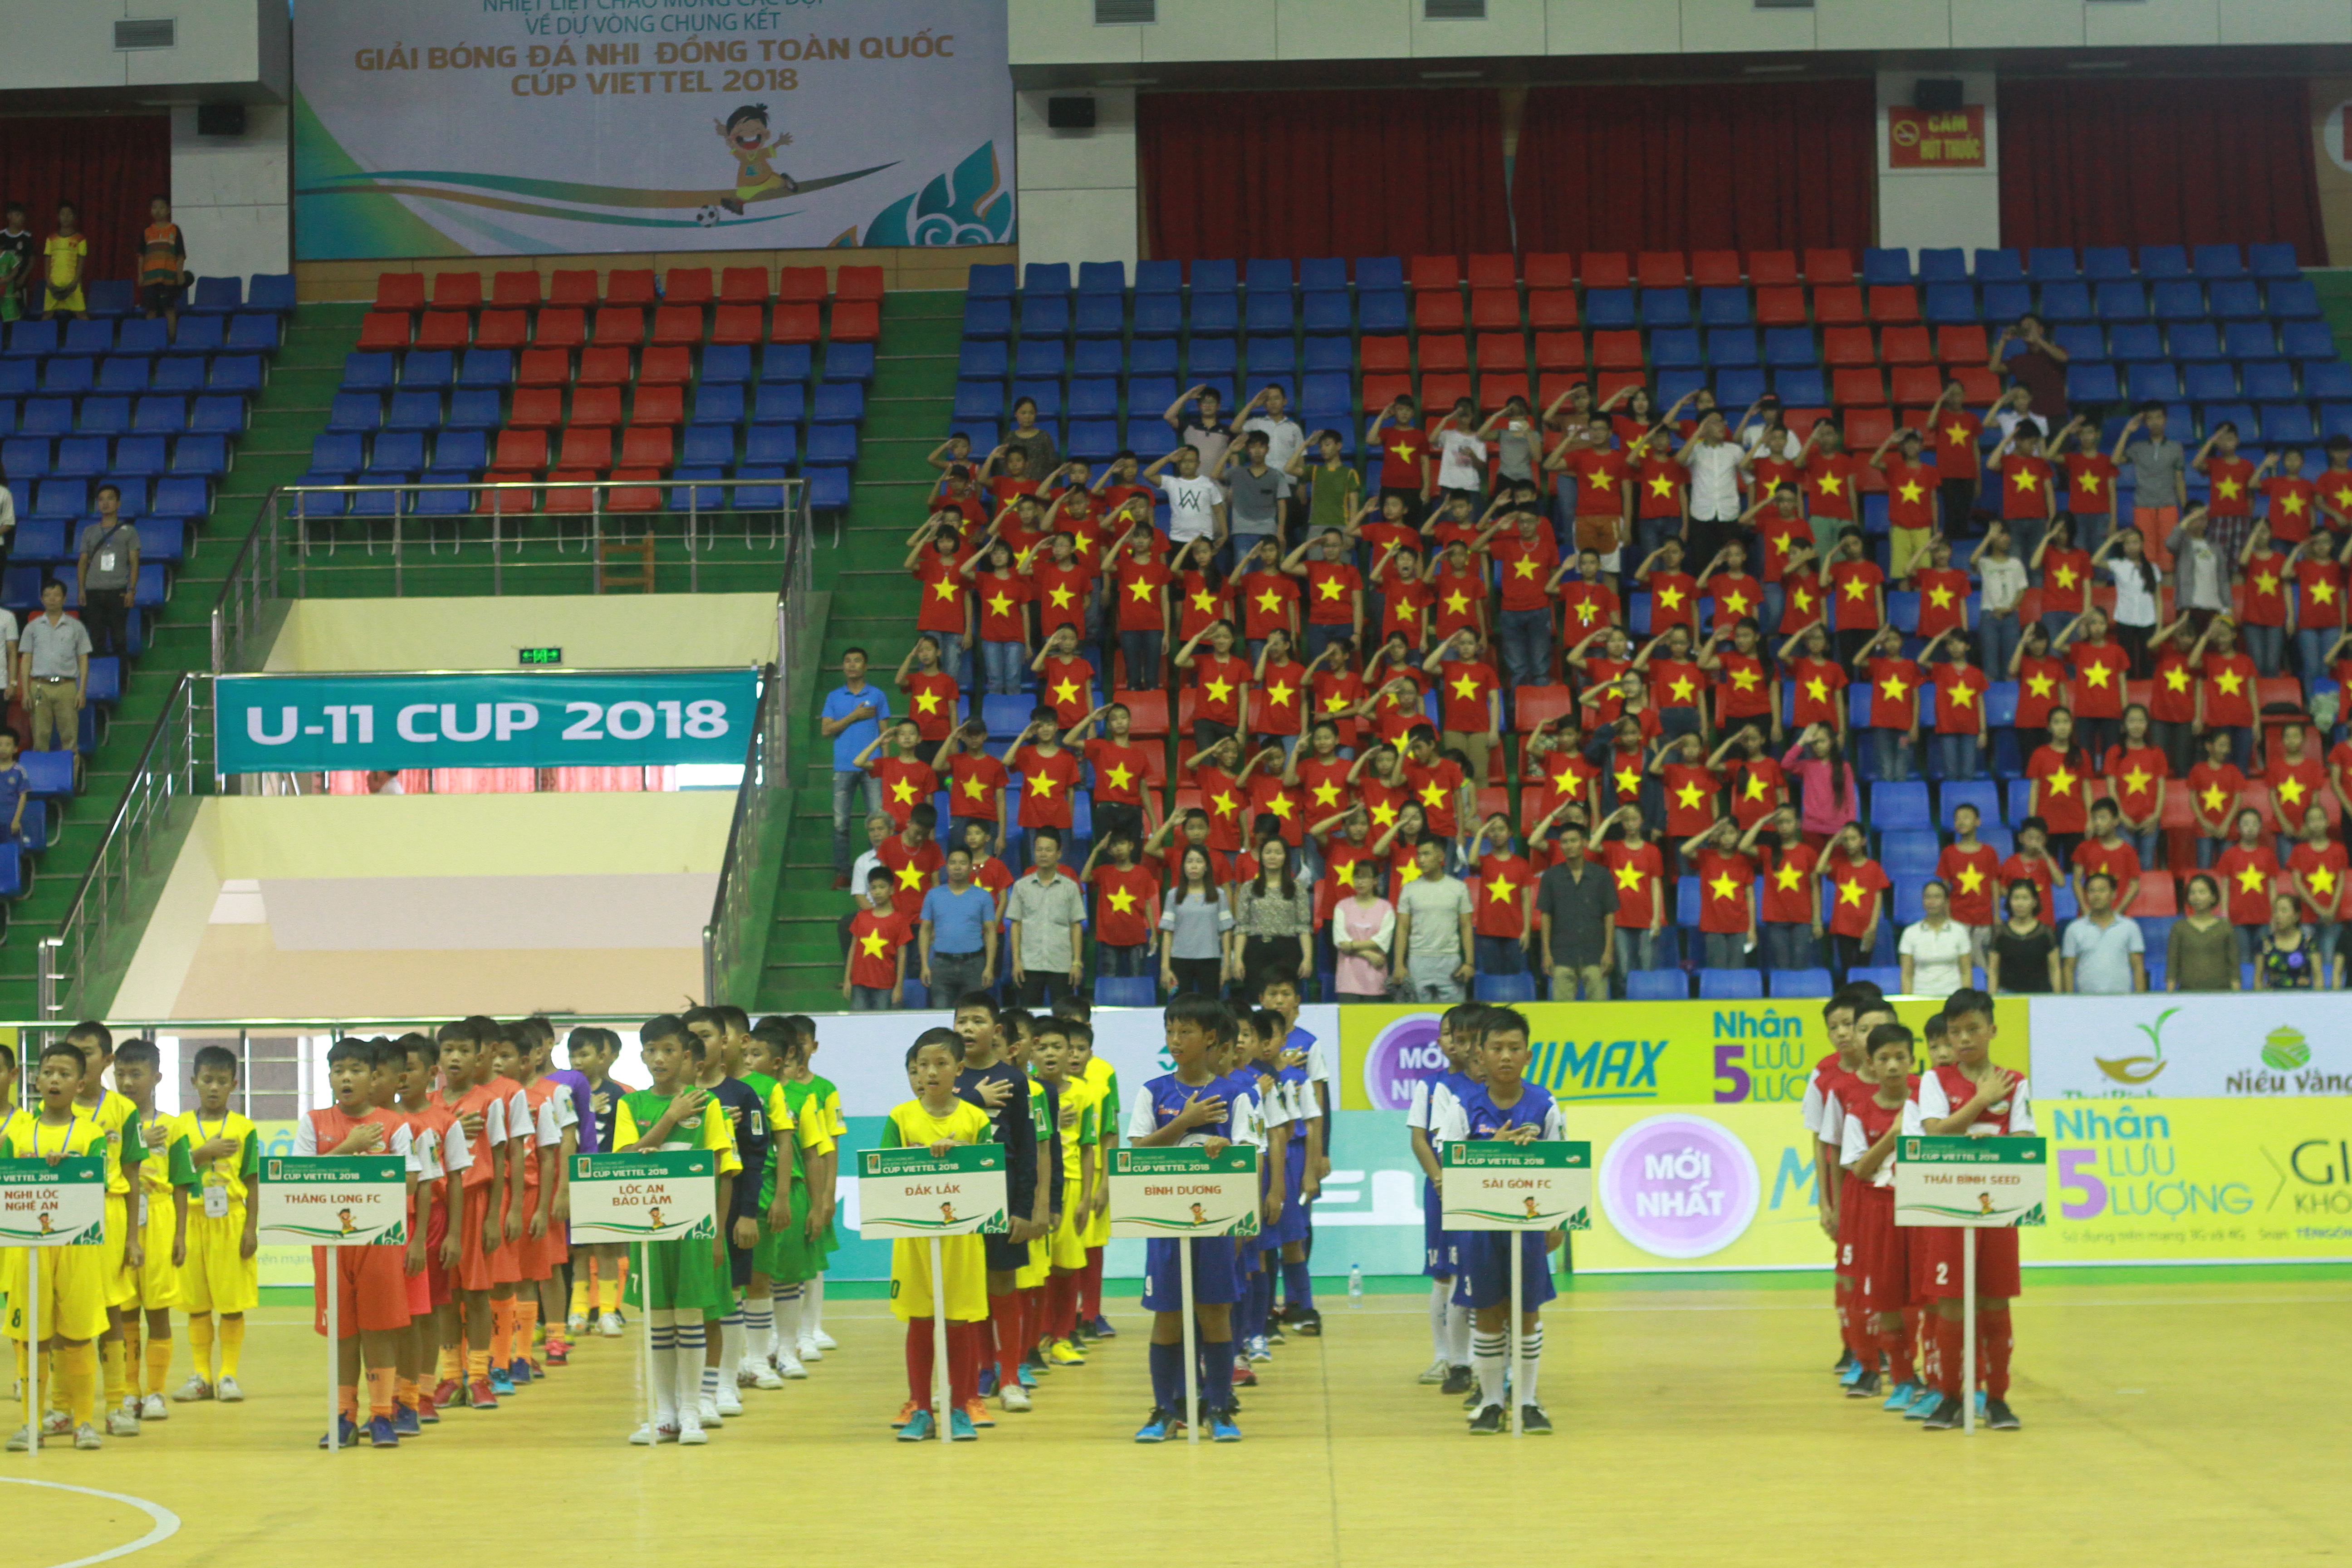 Khai mạc Vòng Chung kết Giải bóng đá Nhi đồng toàn quốc 2018